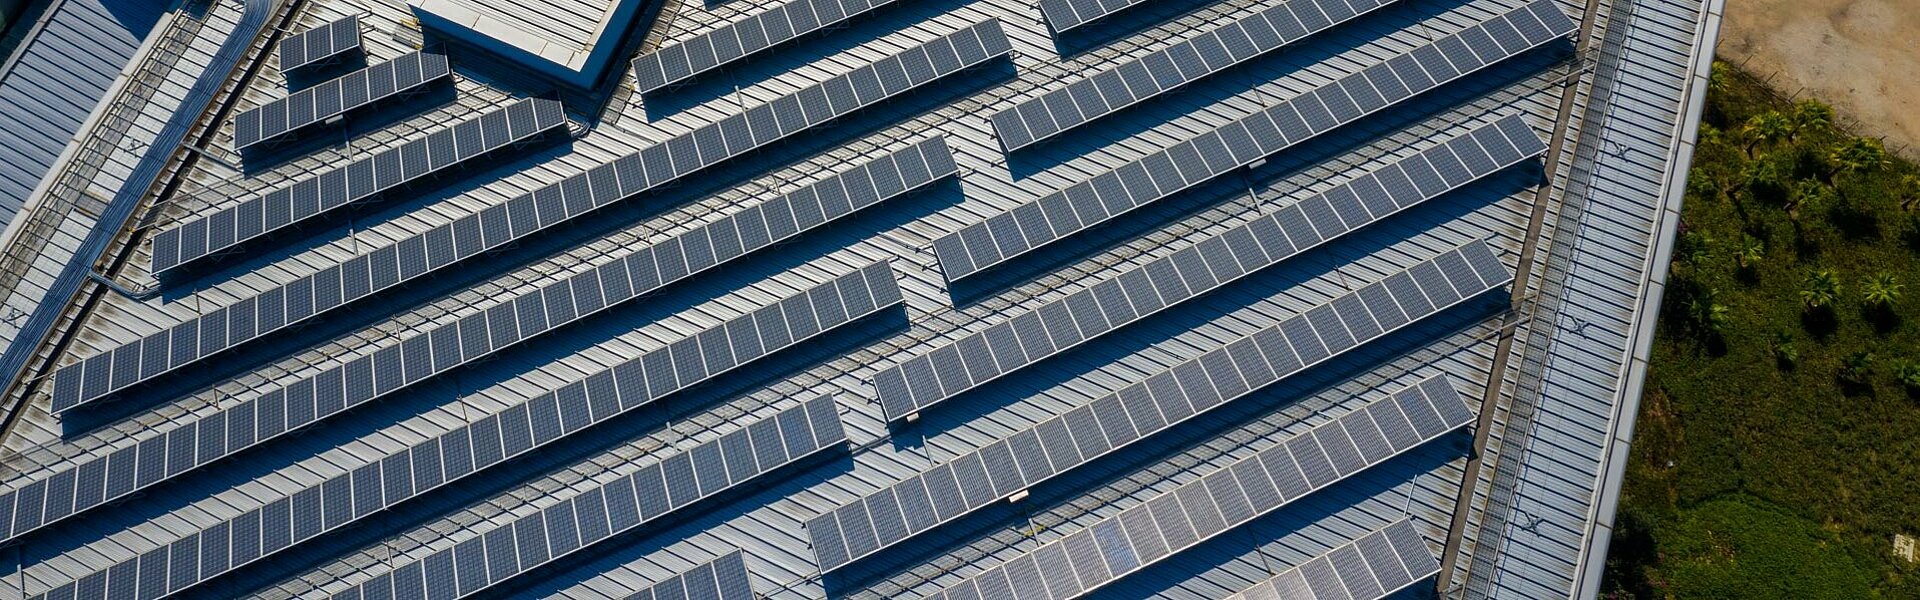 Luftaufnahme von Reihen mit Photovoltaikmodulen auf dem Flachdach einer Gewerbehalle